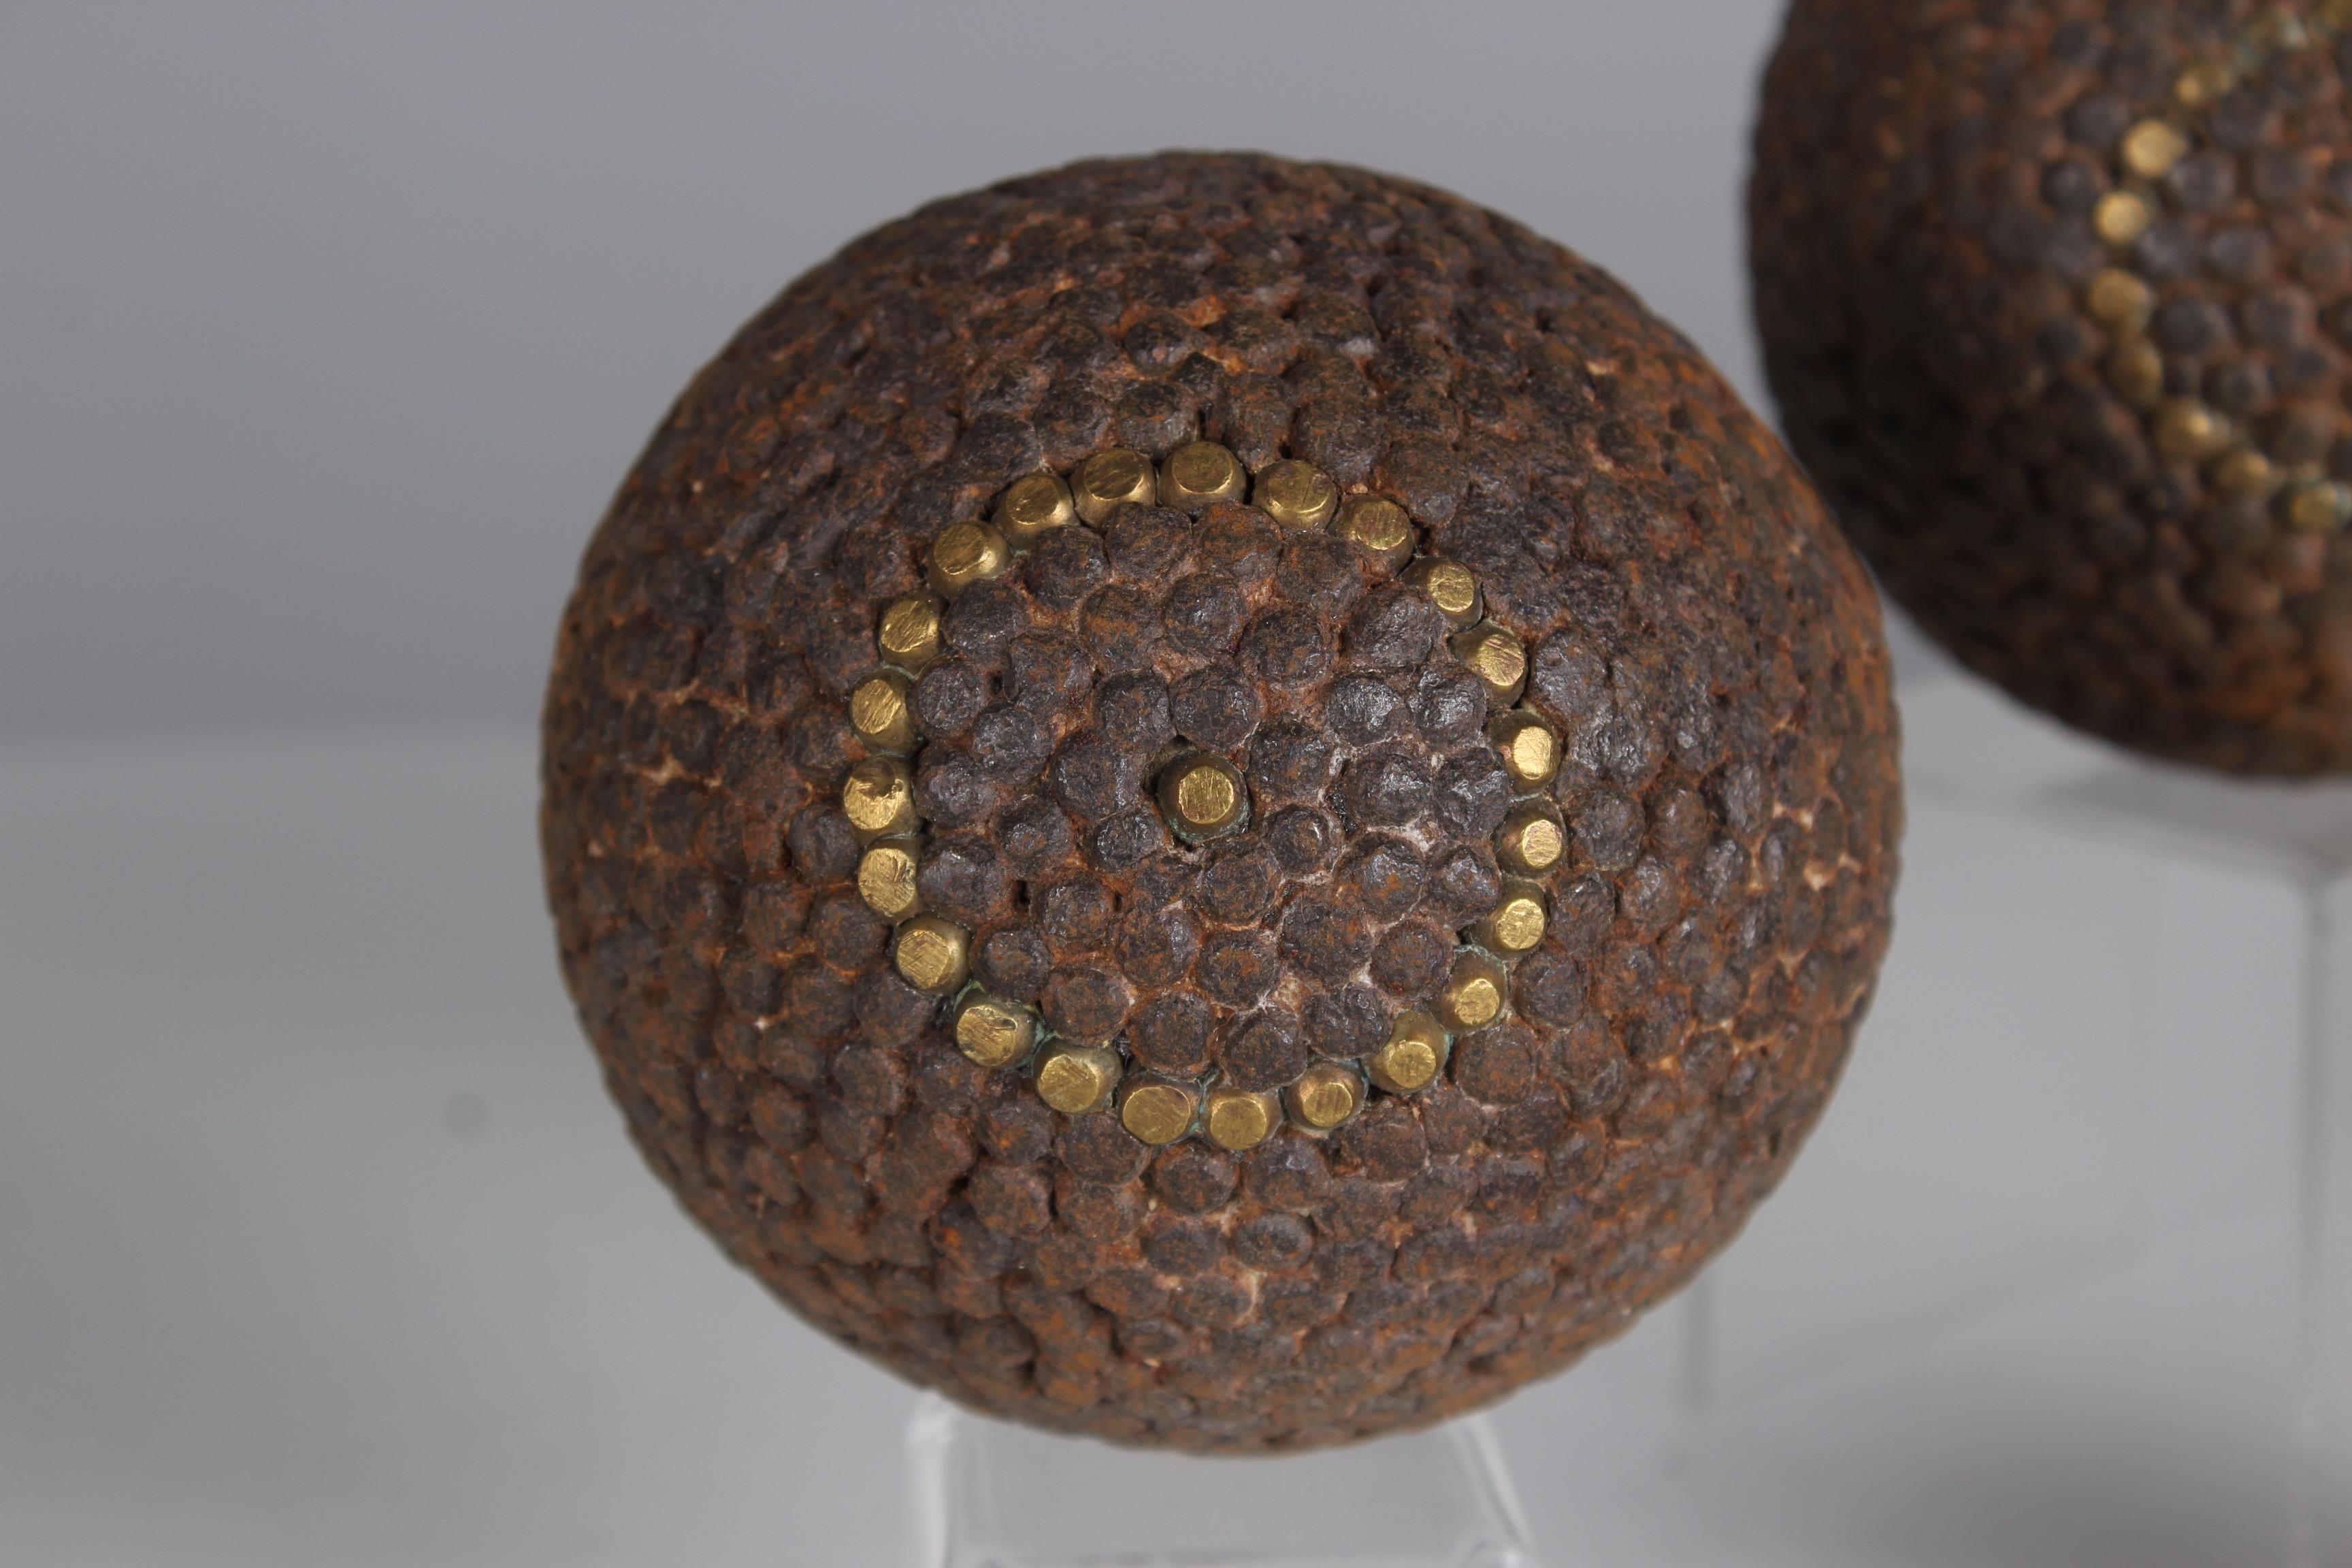 Schönes, einzigartiges Boulekugelpaar und eine Zielkugel, Frankreich, Ende 19.

Im 19. Jahrhundert erfuhr die Herstellung von Boulekugeln in Frankreich eine bedeutende Entwicklung, als das Boule-Spiel, insbesondere die Pétanque-Variante, an